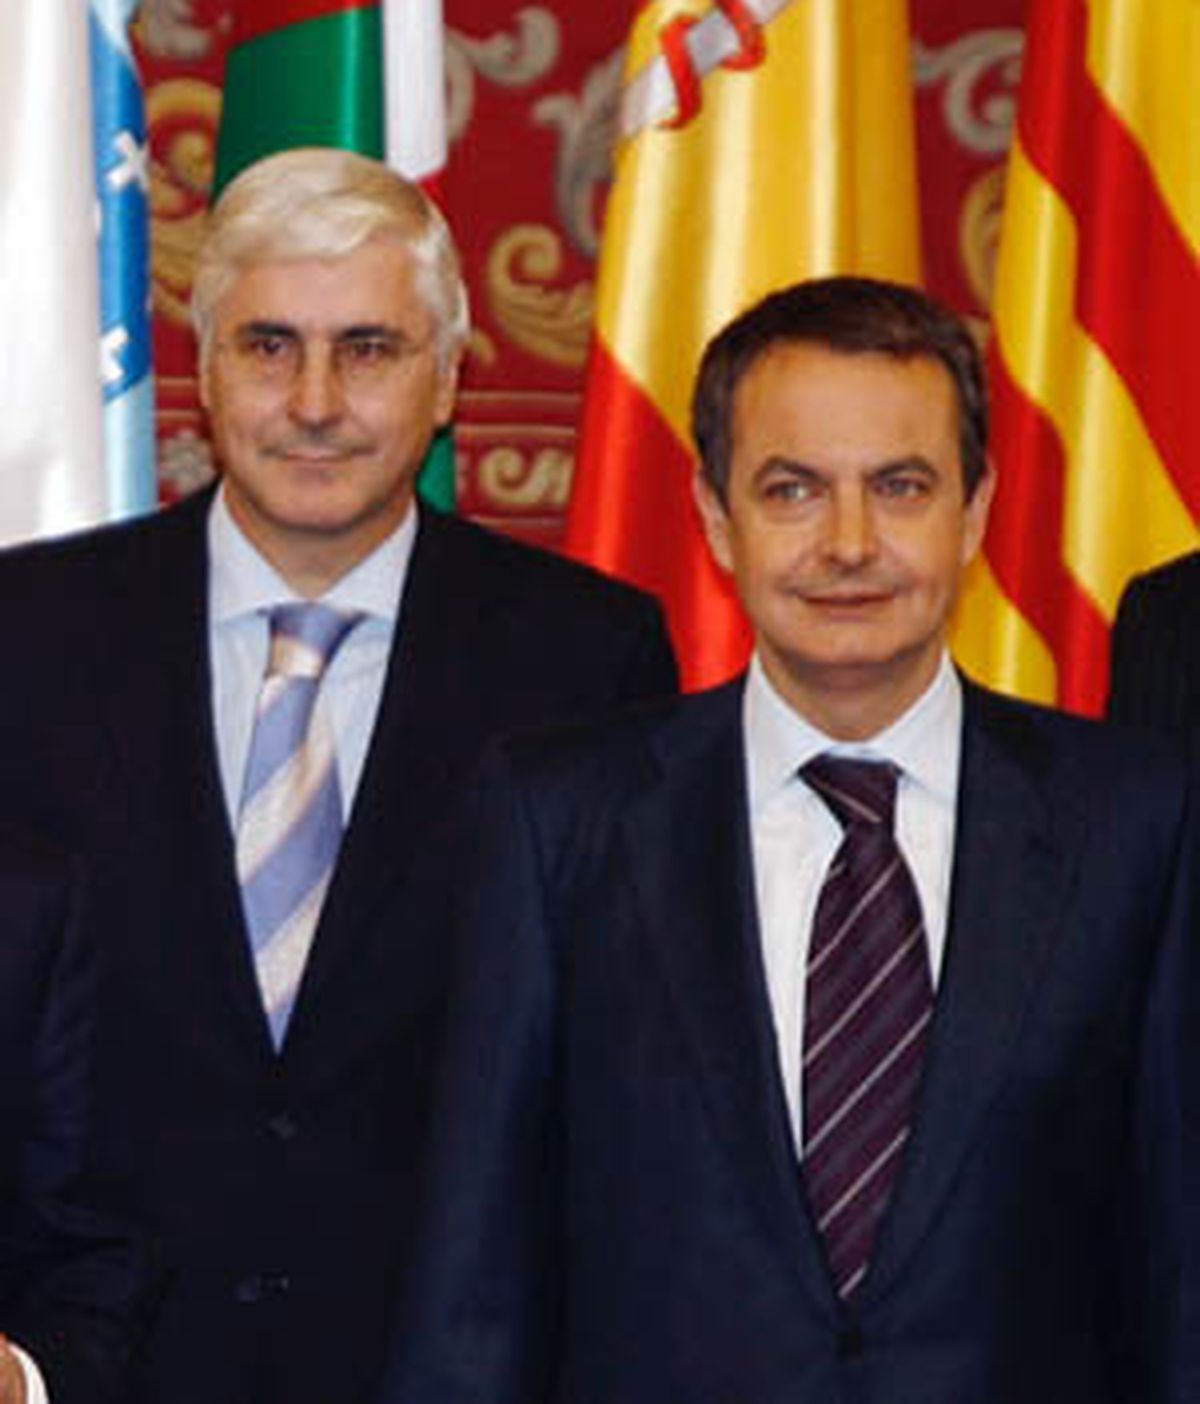 Barreda justifica su recomendación de cambios en el Gobierno porque es "leal y sincero" a Zapatero